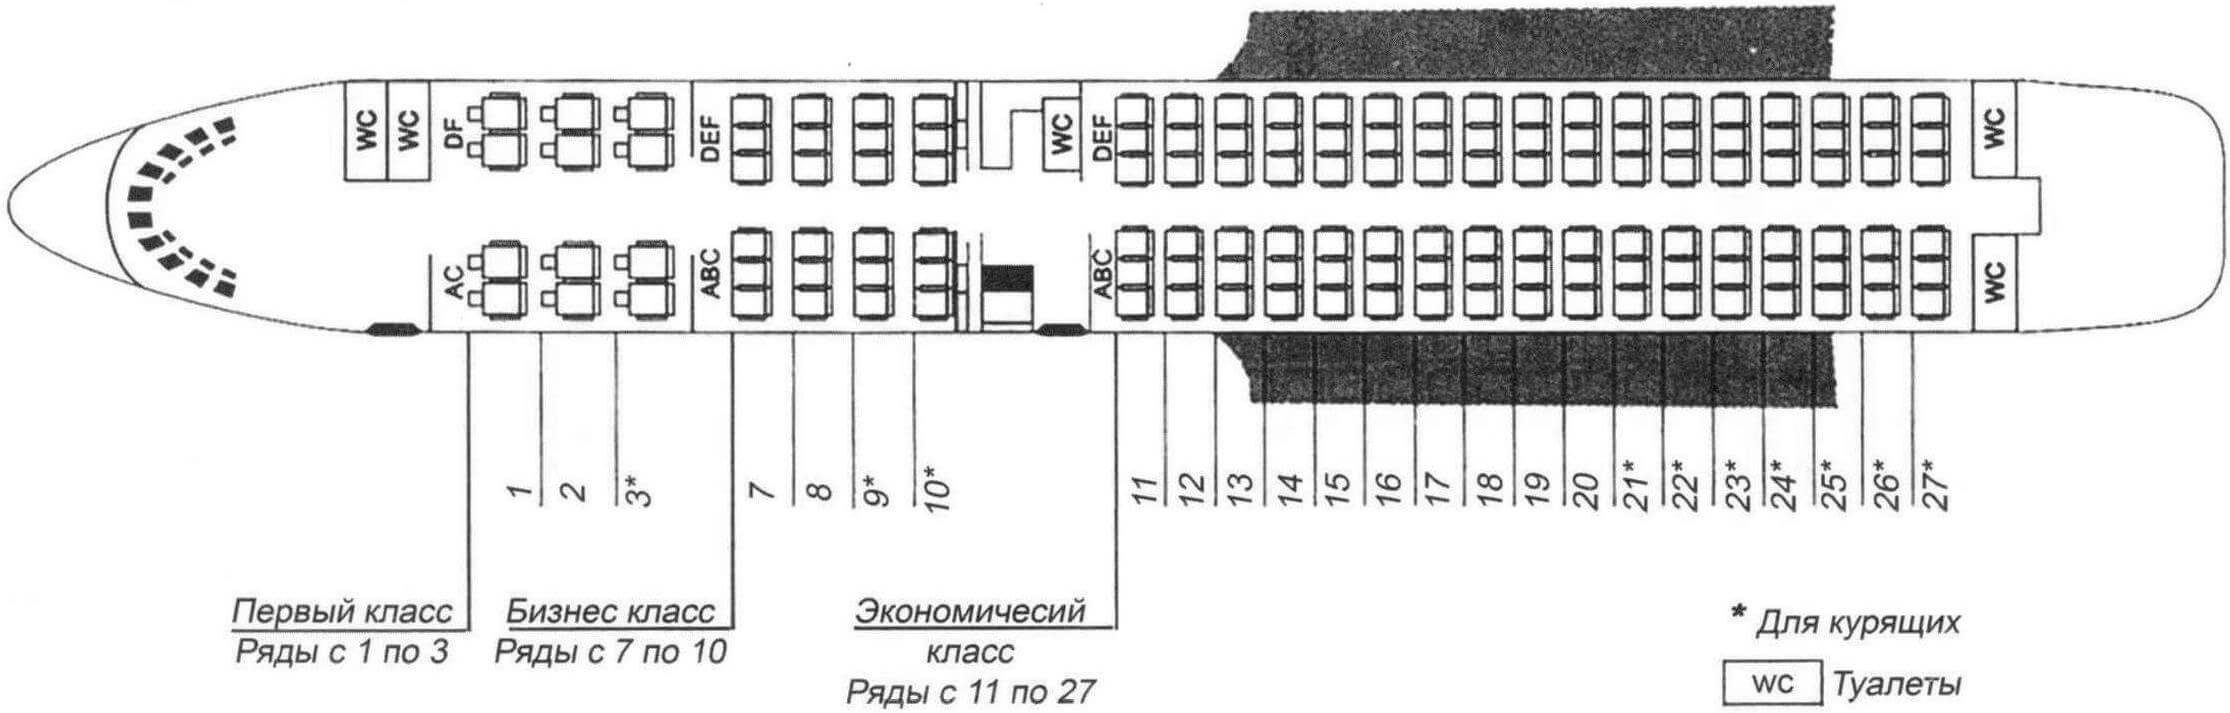 Компоновка салона Ил-62М начала 1990-х годов